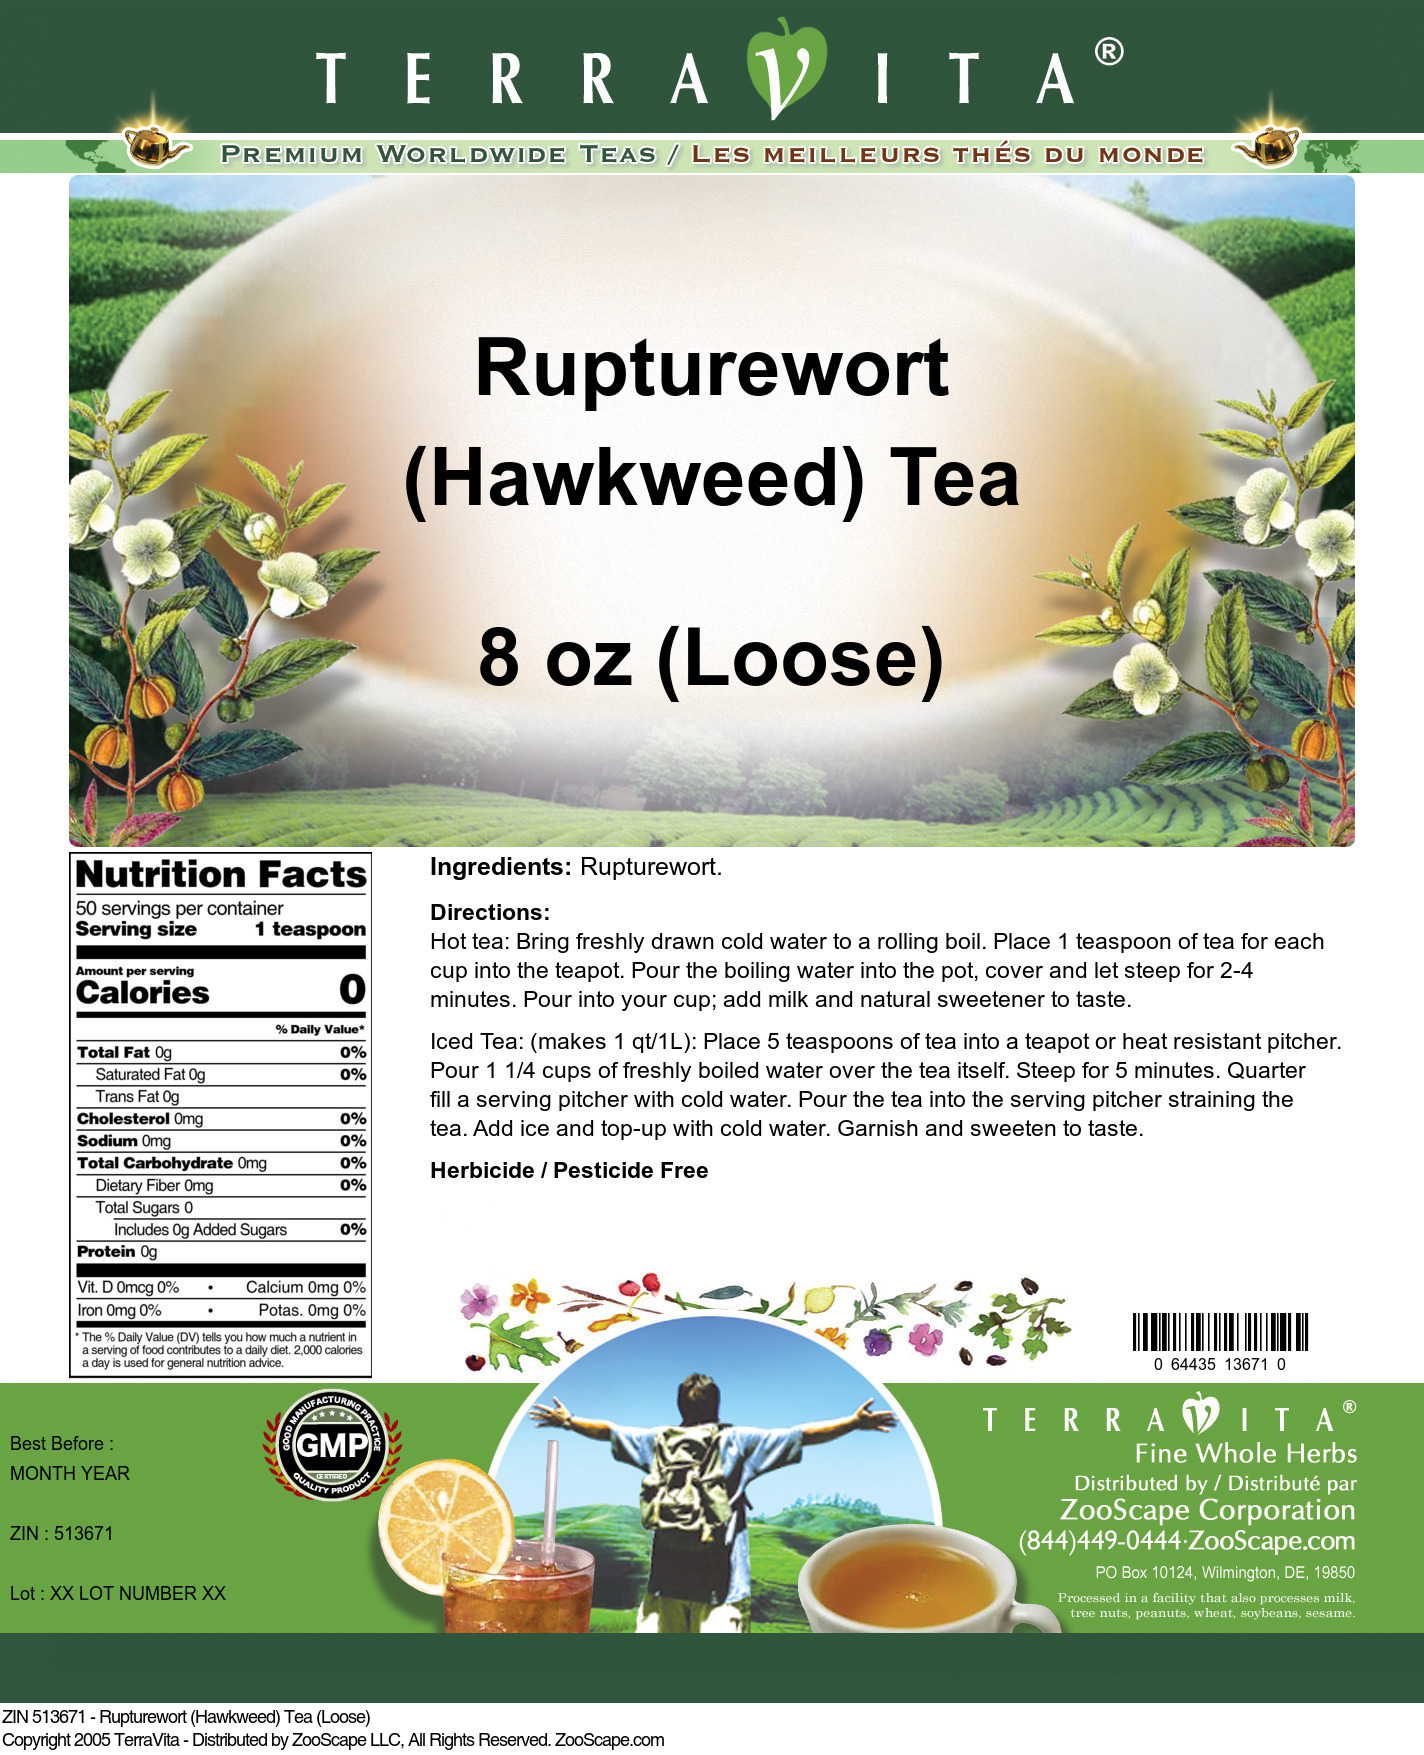 Rupturewort (Hawkweed) Tea (Loose) - Label